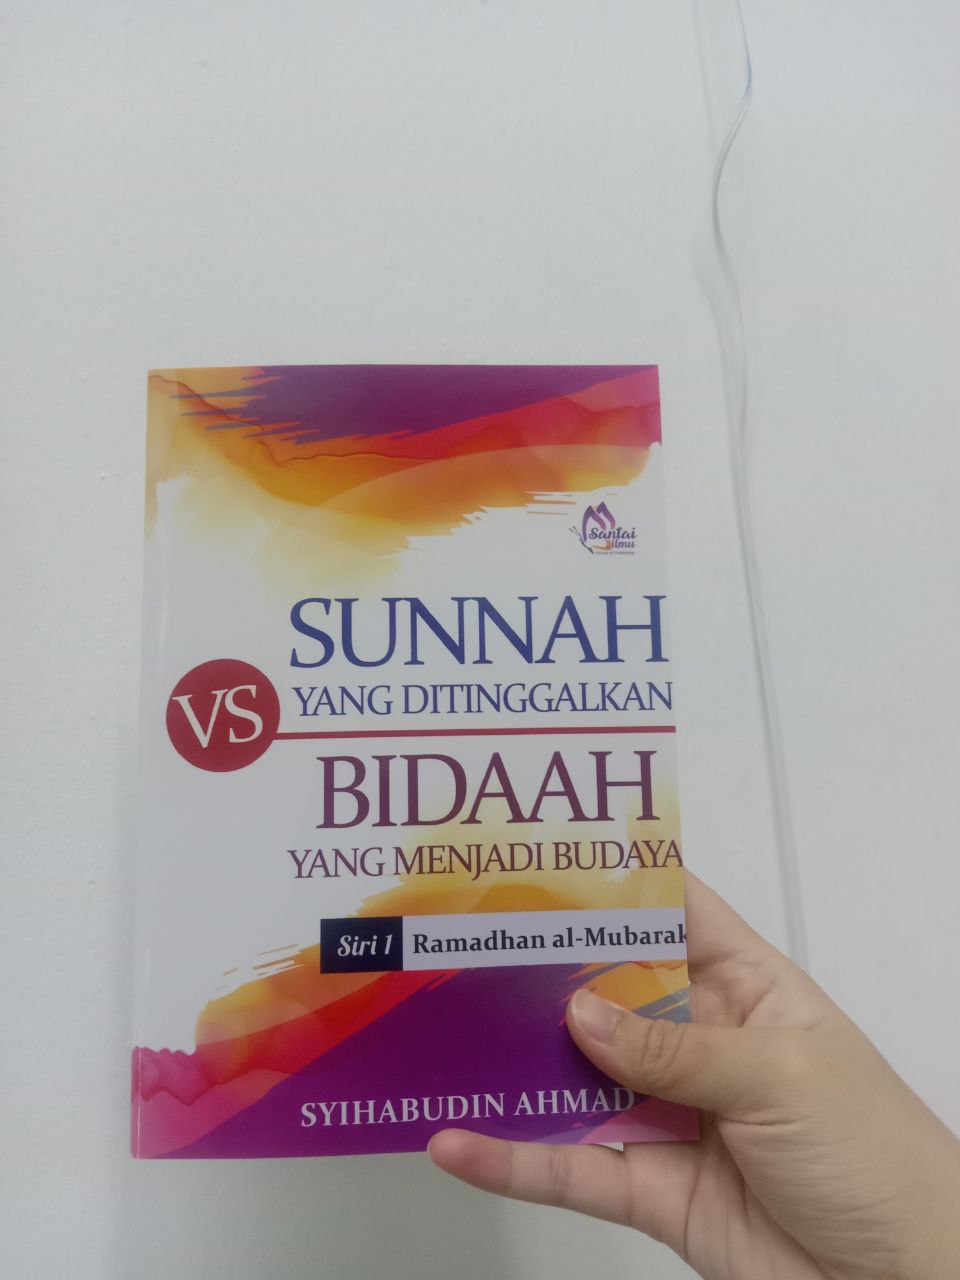 Sunnah Ramadhan yang Ditinggalkan vs Bidaah yang Menjadi Budaya | Syihabudin Ahmad | Santai Ilmu Publication